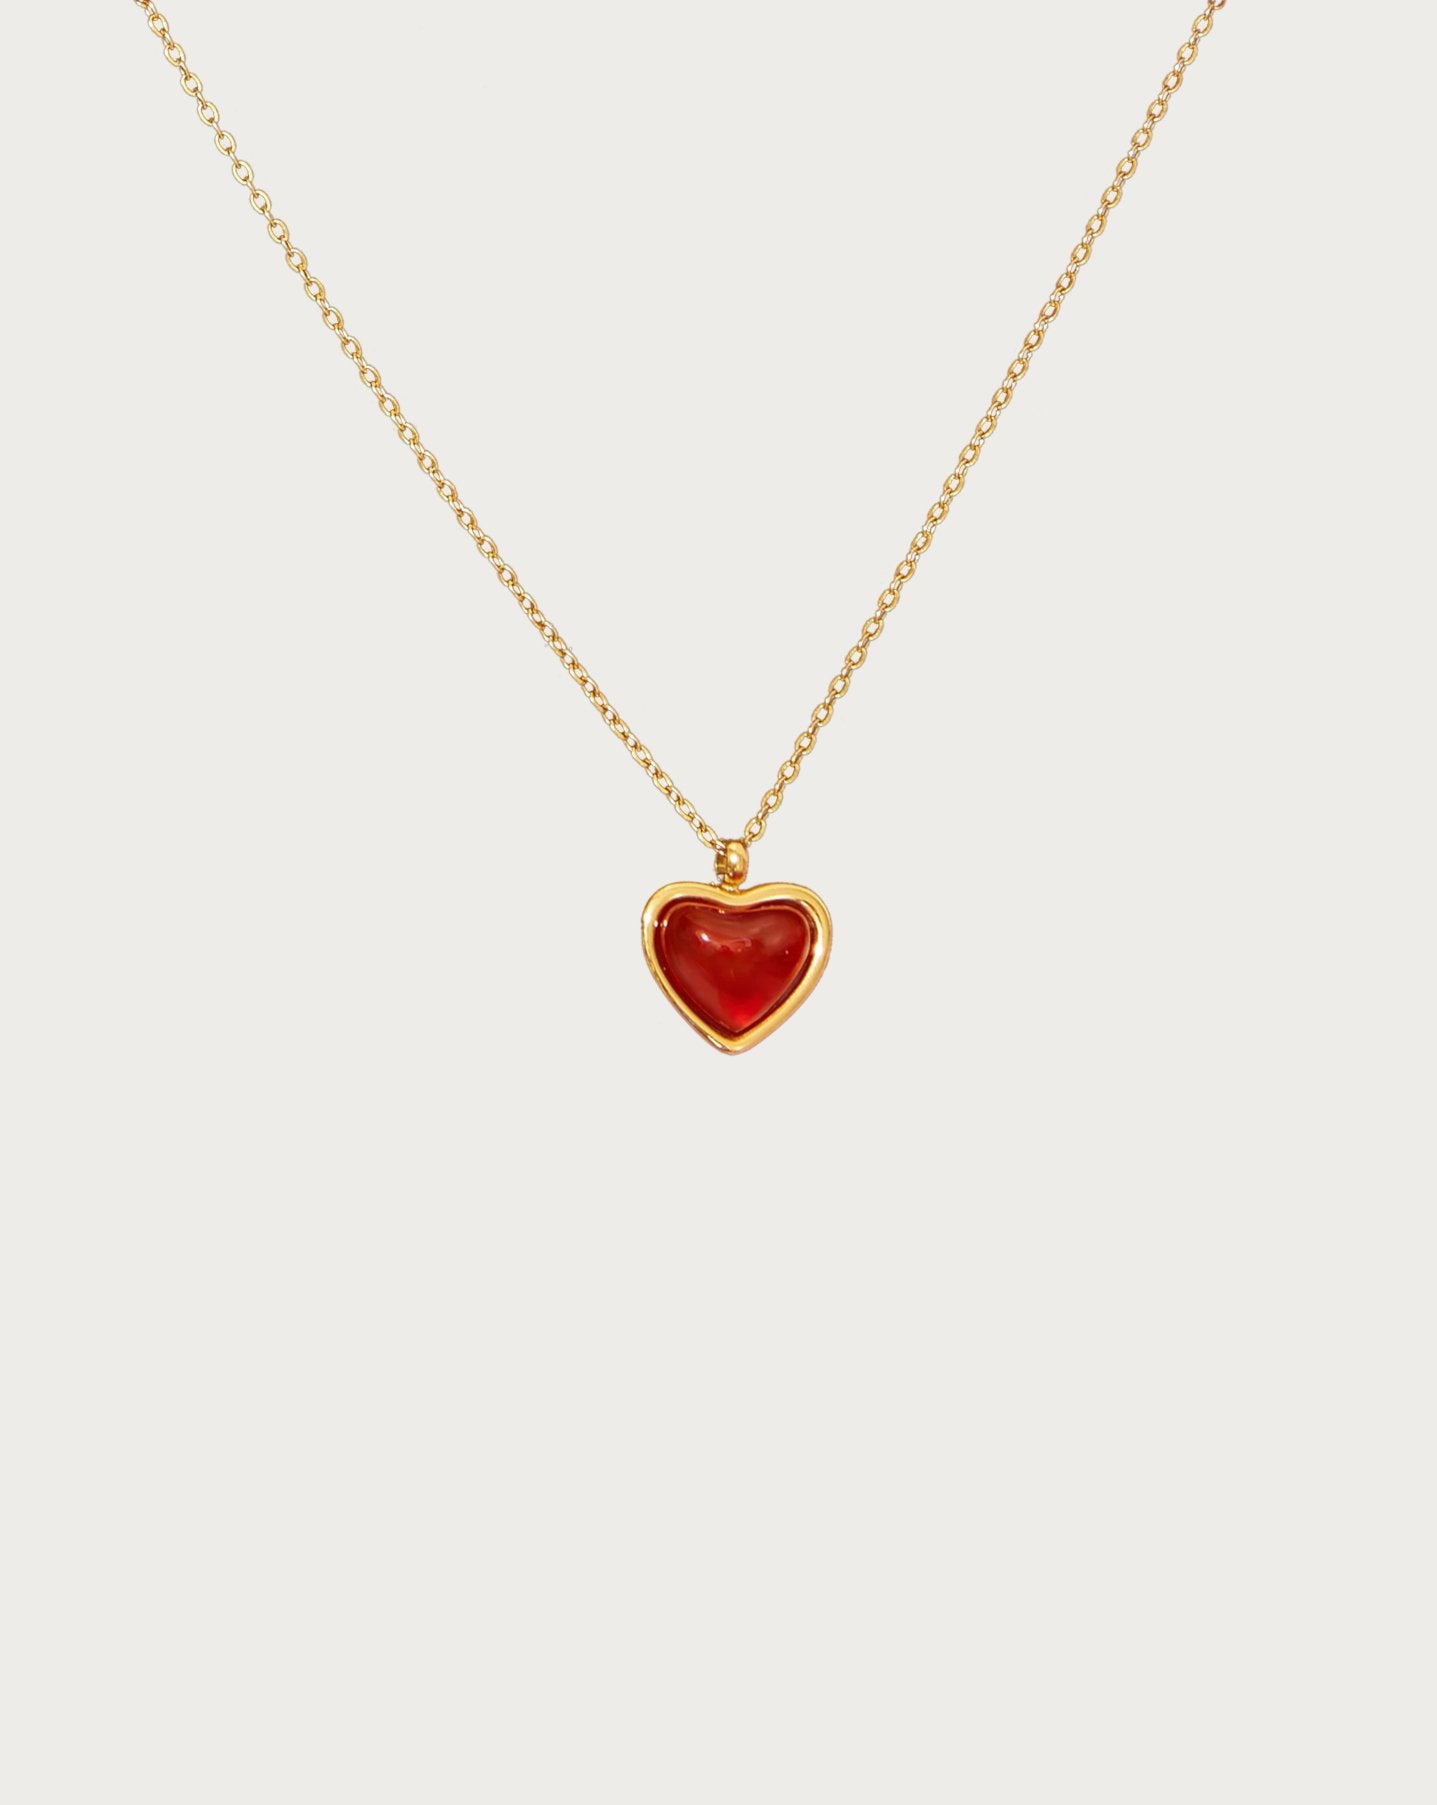 Carnelian Stone Heart Necklace in Silver